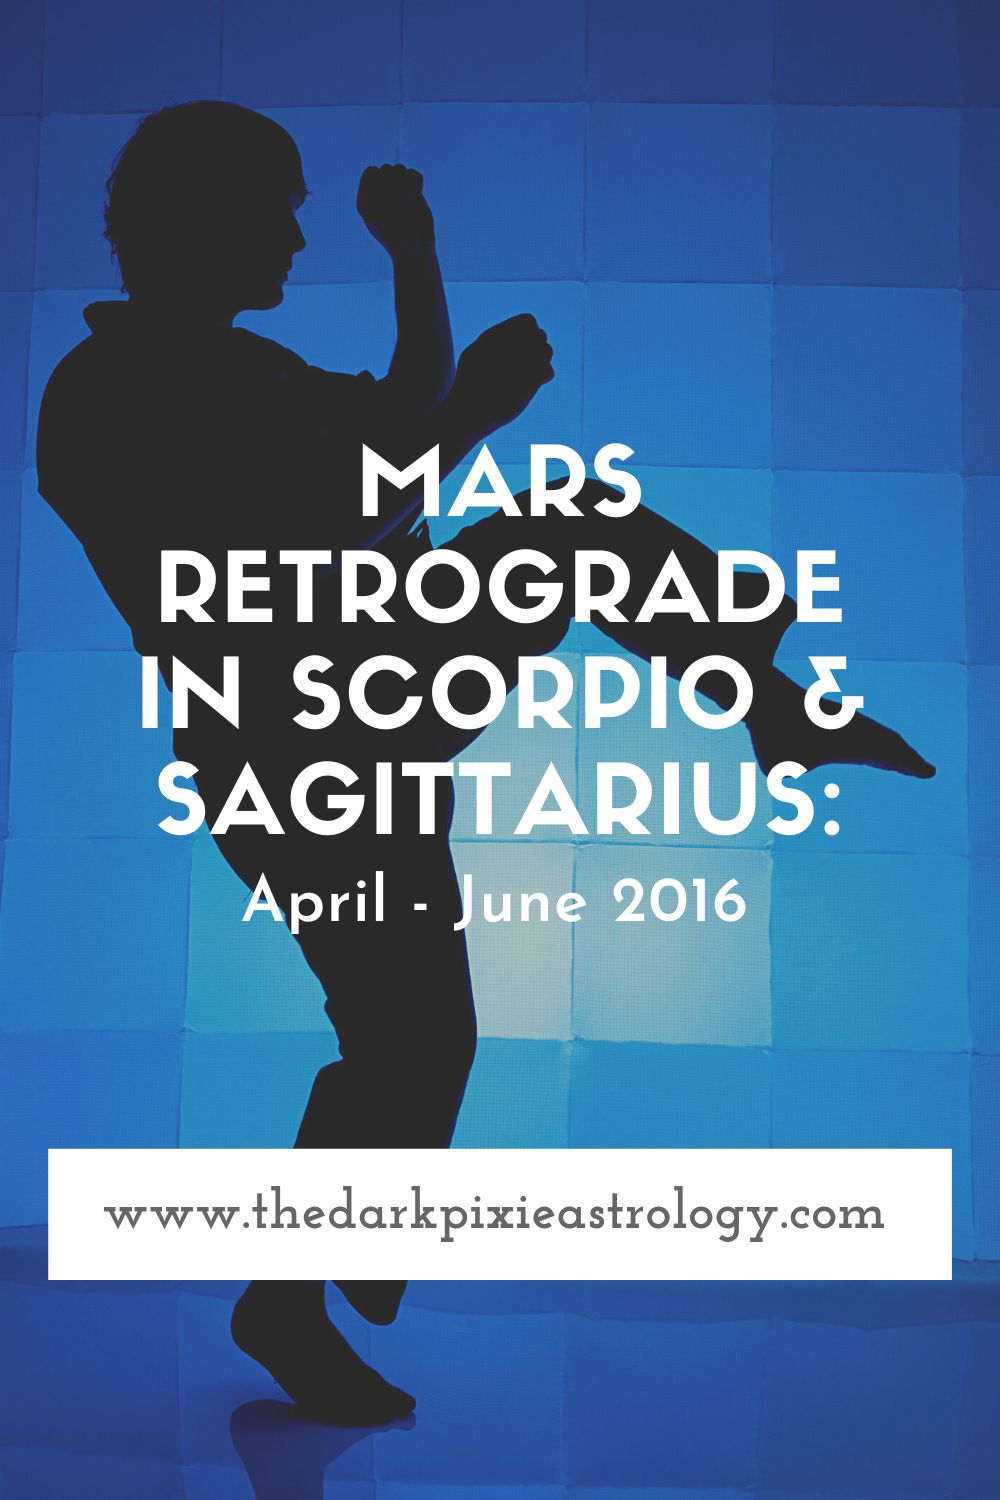 Mars Retrograde in Scorpio & Sagittarius: April - June 2016 - The Dark Pixie Astrology